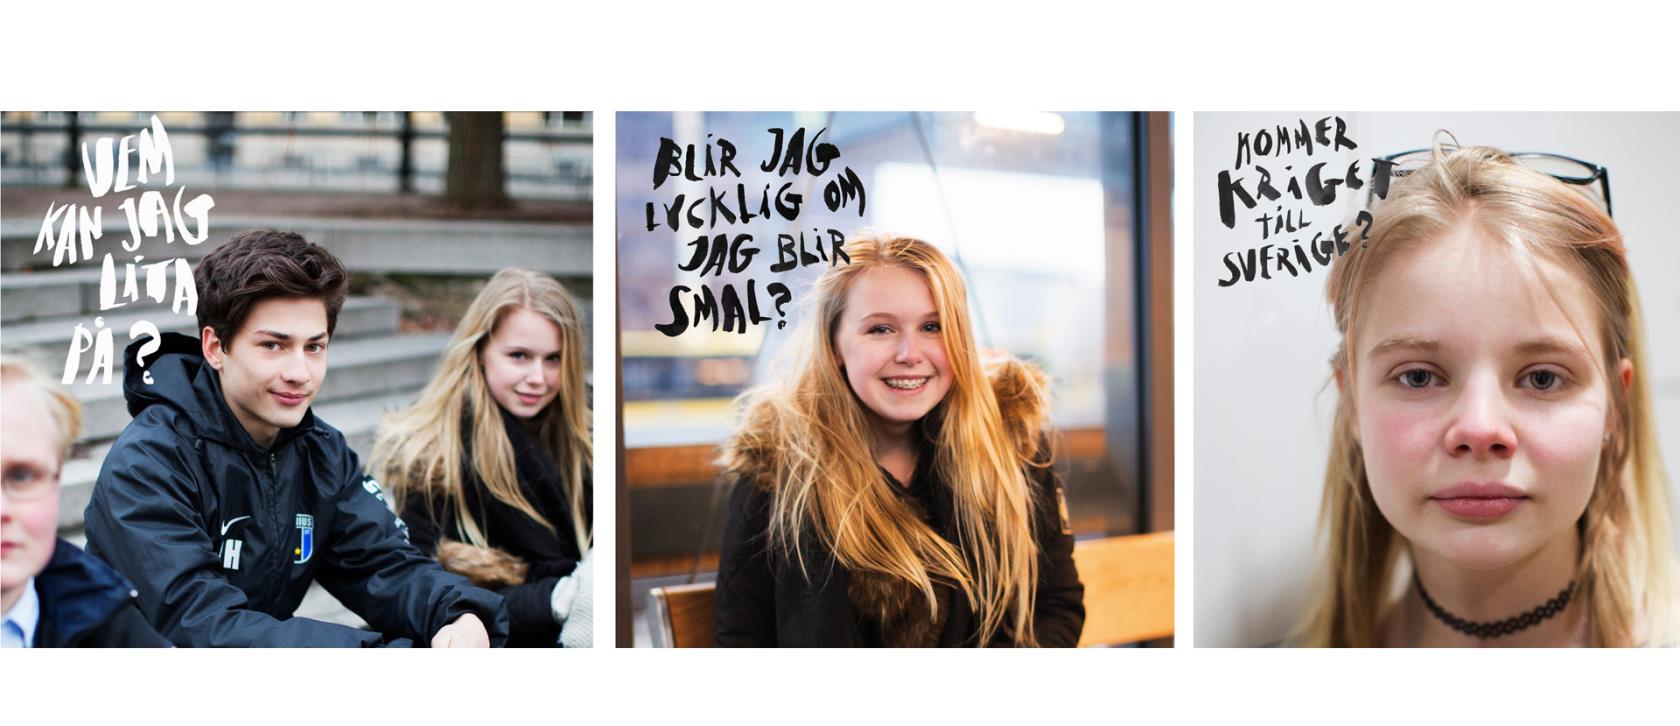 Bilder på ungdomar med blicken riktad mot betraktaren. Frågor är textade på bilderna: Vem kan jag lita på? Blir jag lycklig om jag blir smal? Kommer kriget till Sverige?